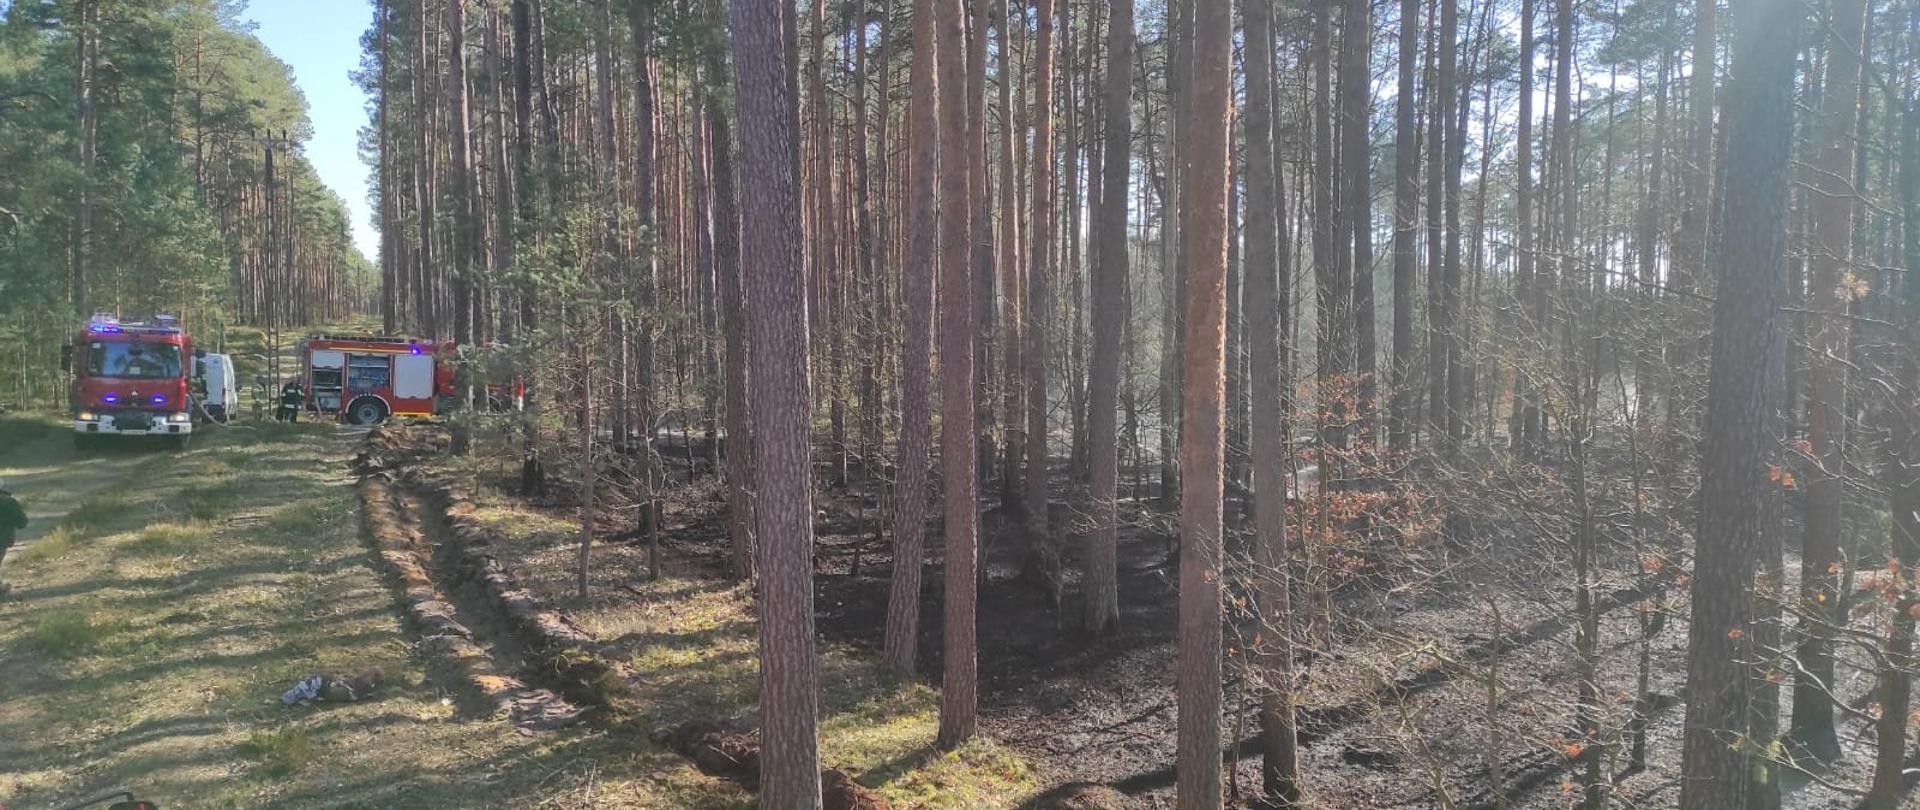 Na zdjęciu widoczny las z częściowo wypalonym poszyciem. Po lewej stronie na leśnej drodze stoją dwa czerwone samochody gaśnicze. Widoczny przód kabiny z włączonymi niebieskimi sygnałami świetlnymi, za nim prawy bok drugiego z otwartymi dwoma żaluzjami skrytek, przy których widoczne postaci strażaków w ciemnych mundurach bojowych. Wzdłuż ściany lasu widoczna wyorana bruzda w pokrywie gleby.